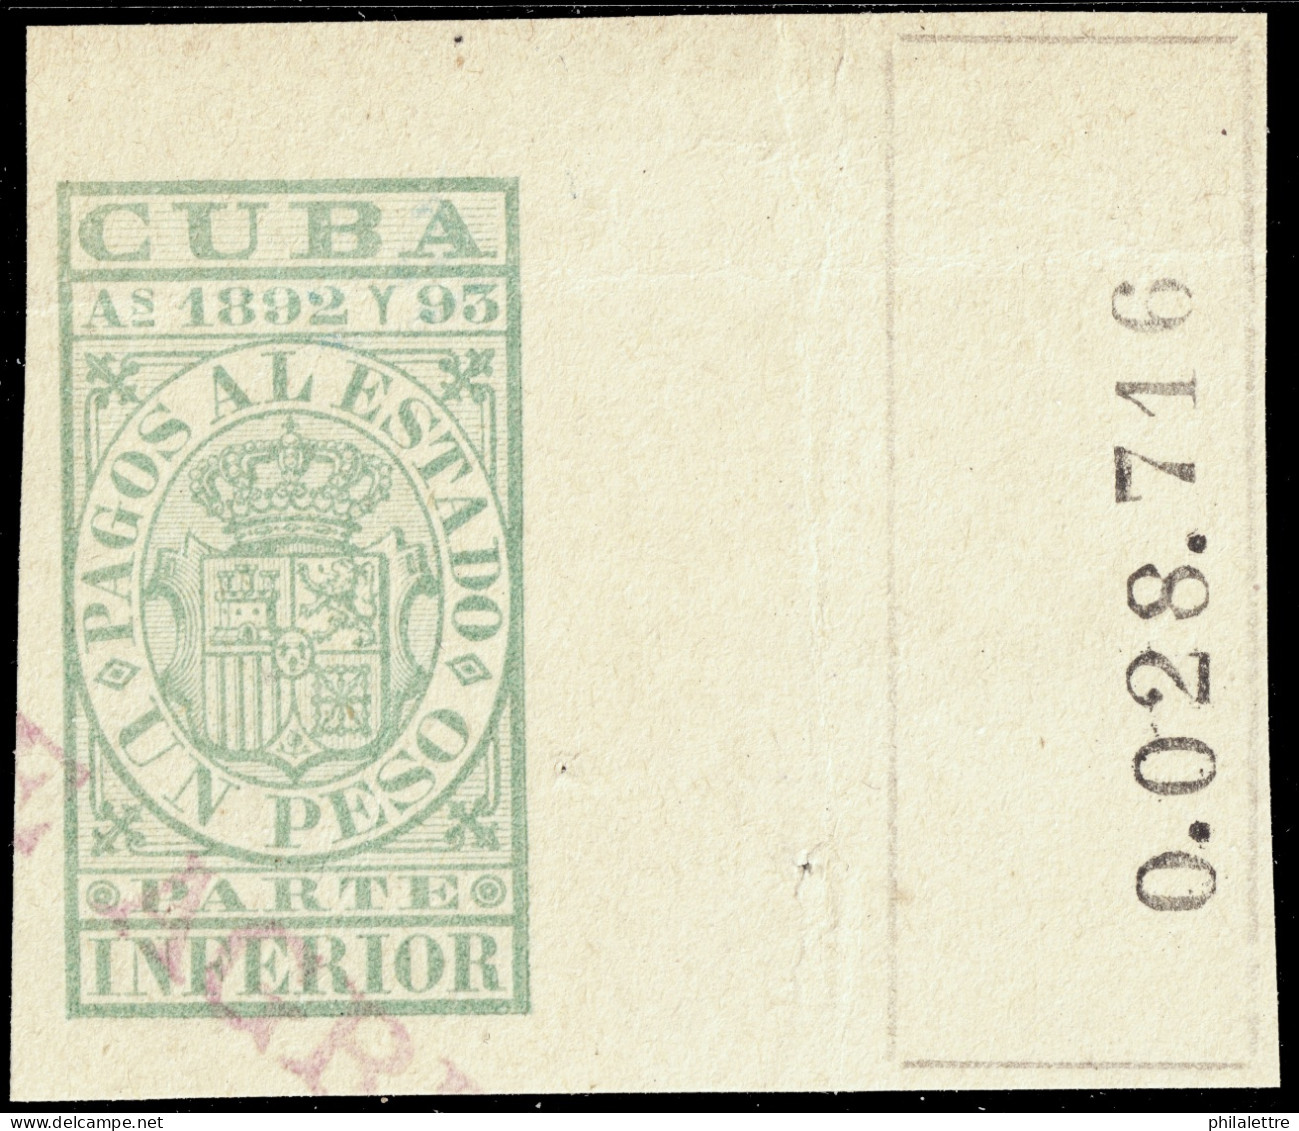 ESPAGNE / ESPANA - COLONIAS (Cuba) 1892/93 "PAGOS AL ESTADO" Fulcher1128 1P Parte Inferior Usado (0.028.716) - Cuba (1874-1898)